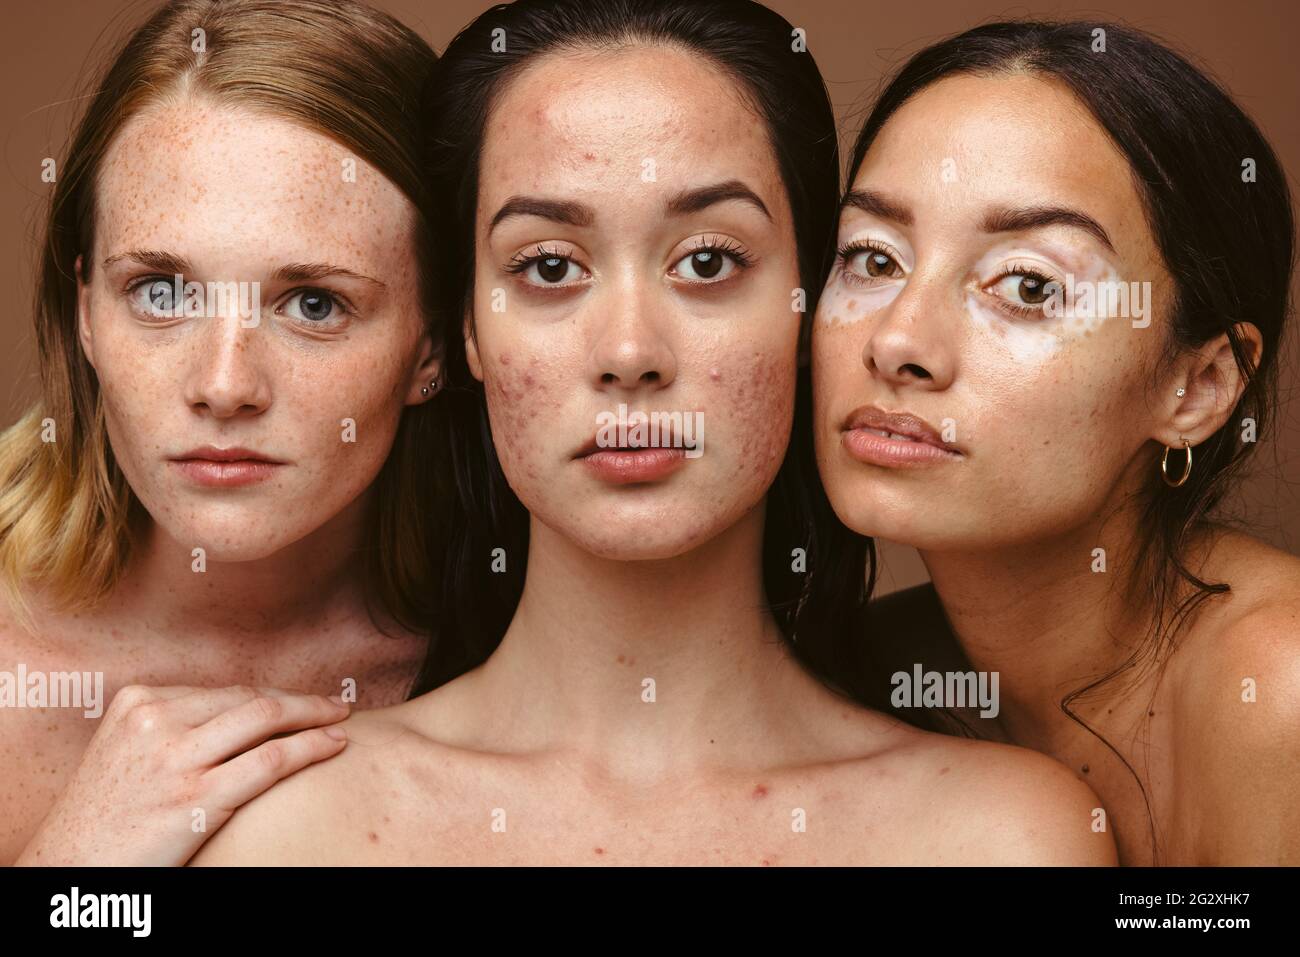 Primo piano di tre donne forti che hanno problemi di pelle insieme su sfondo marrone. Giovani donne che hanno diversi disturbi della pelle come flagelli, acne e vi Foto Stock